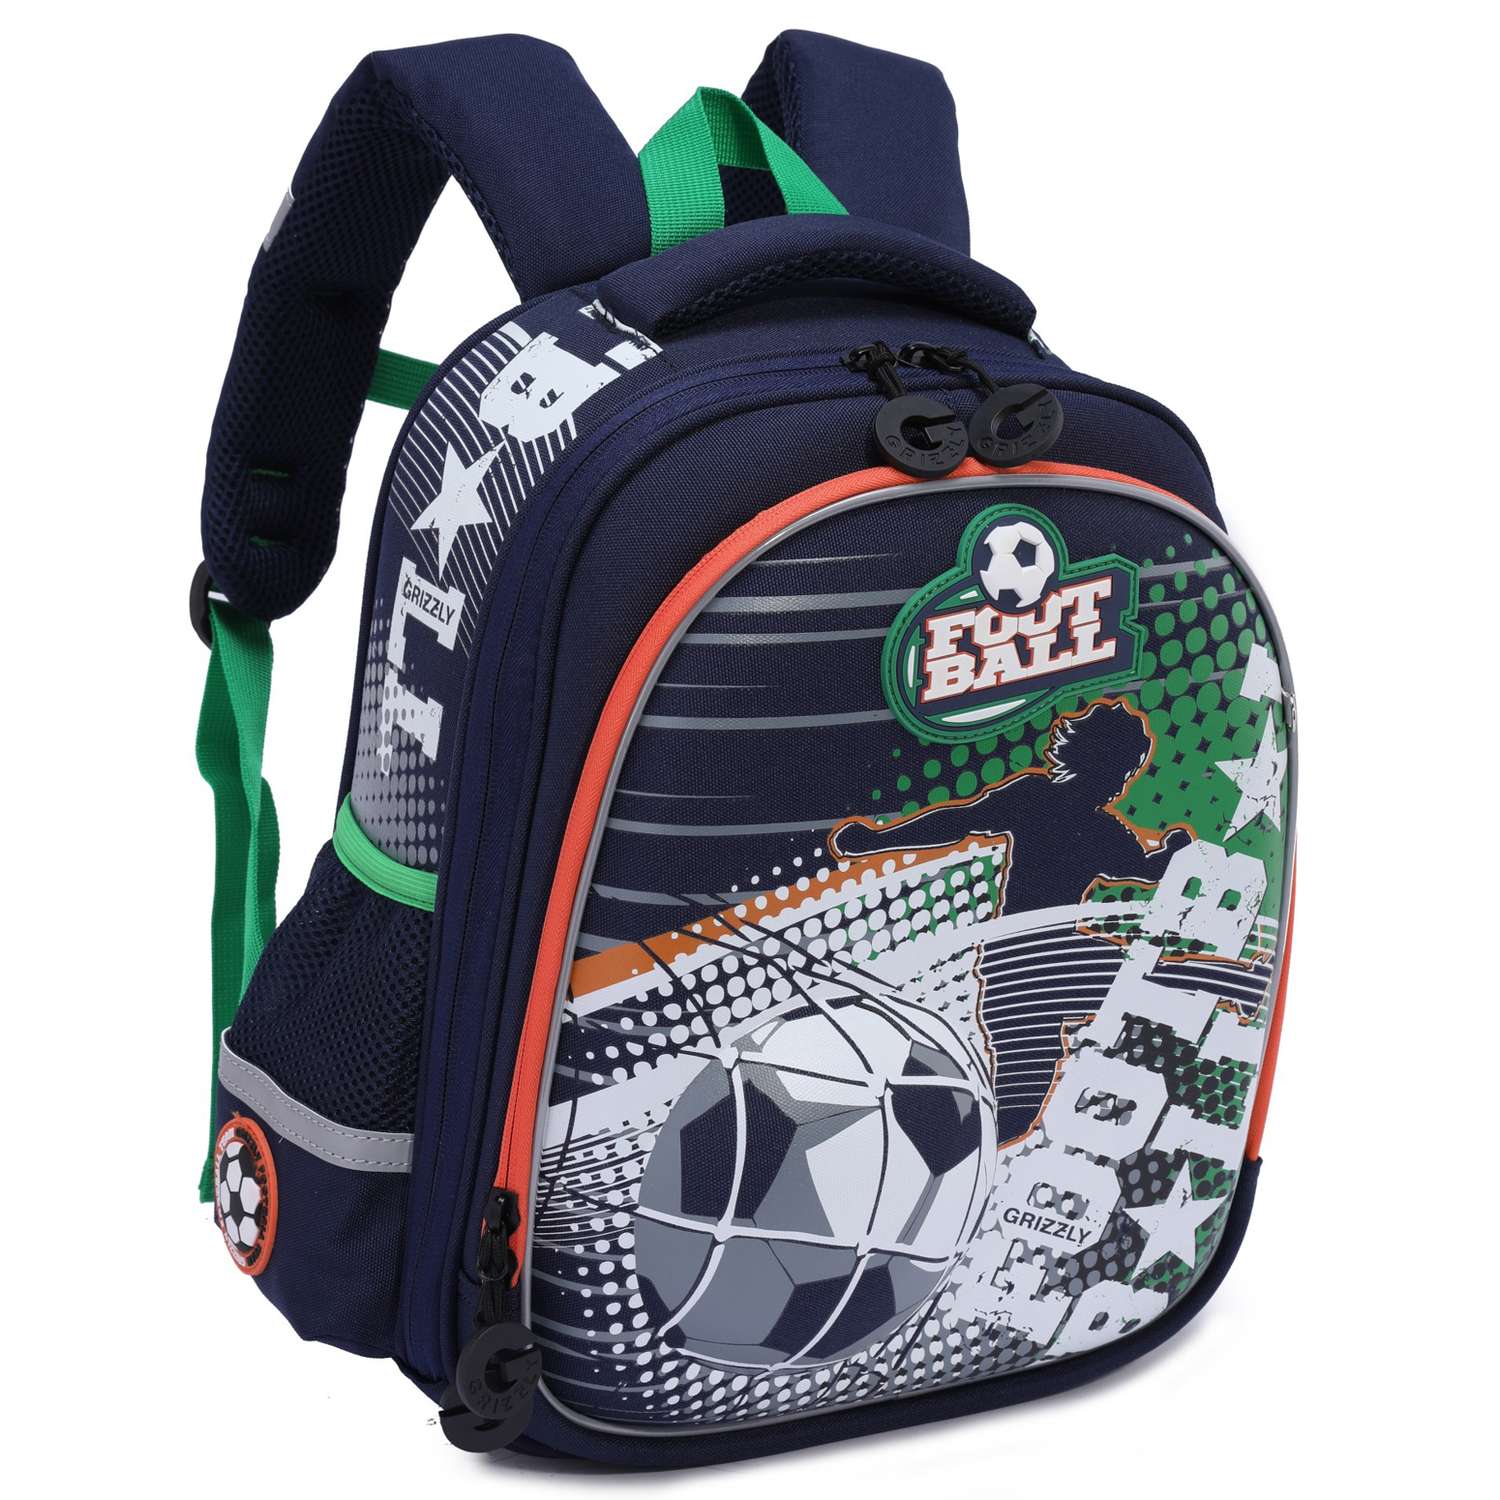 Рюкзак школьный Grizzly Футбол Синий-Зеленый RA-978-1/1 - фото 2